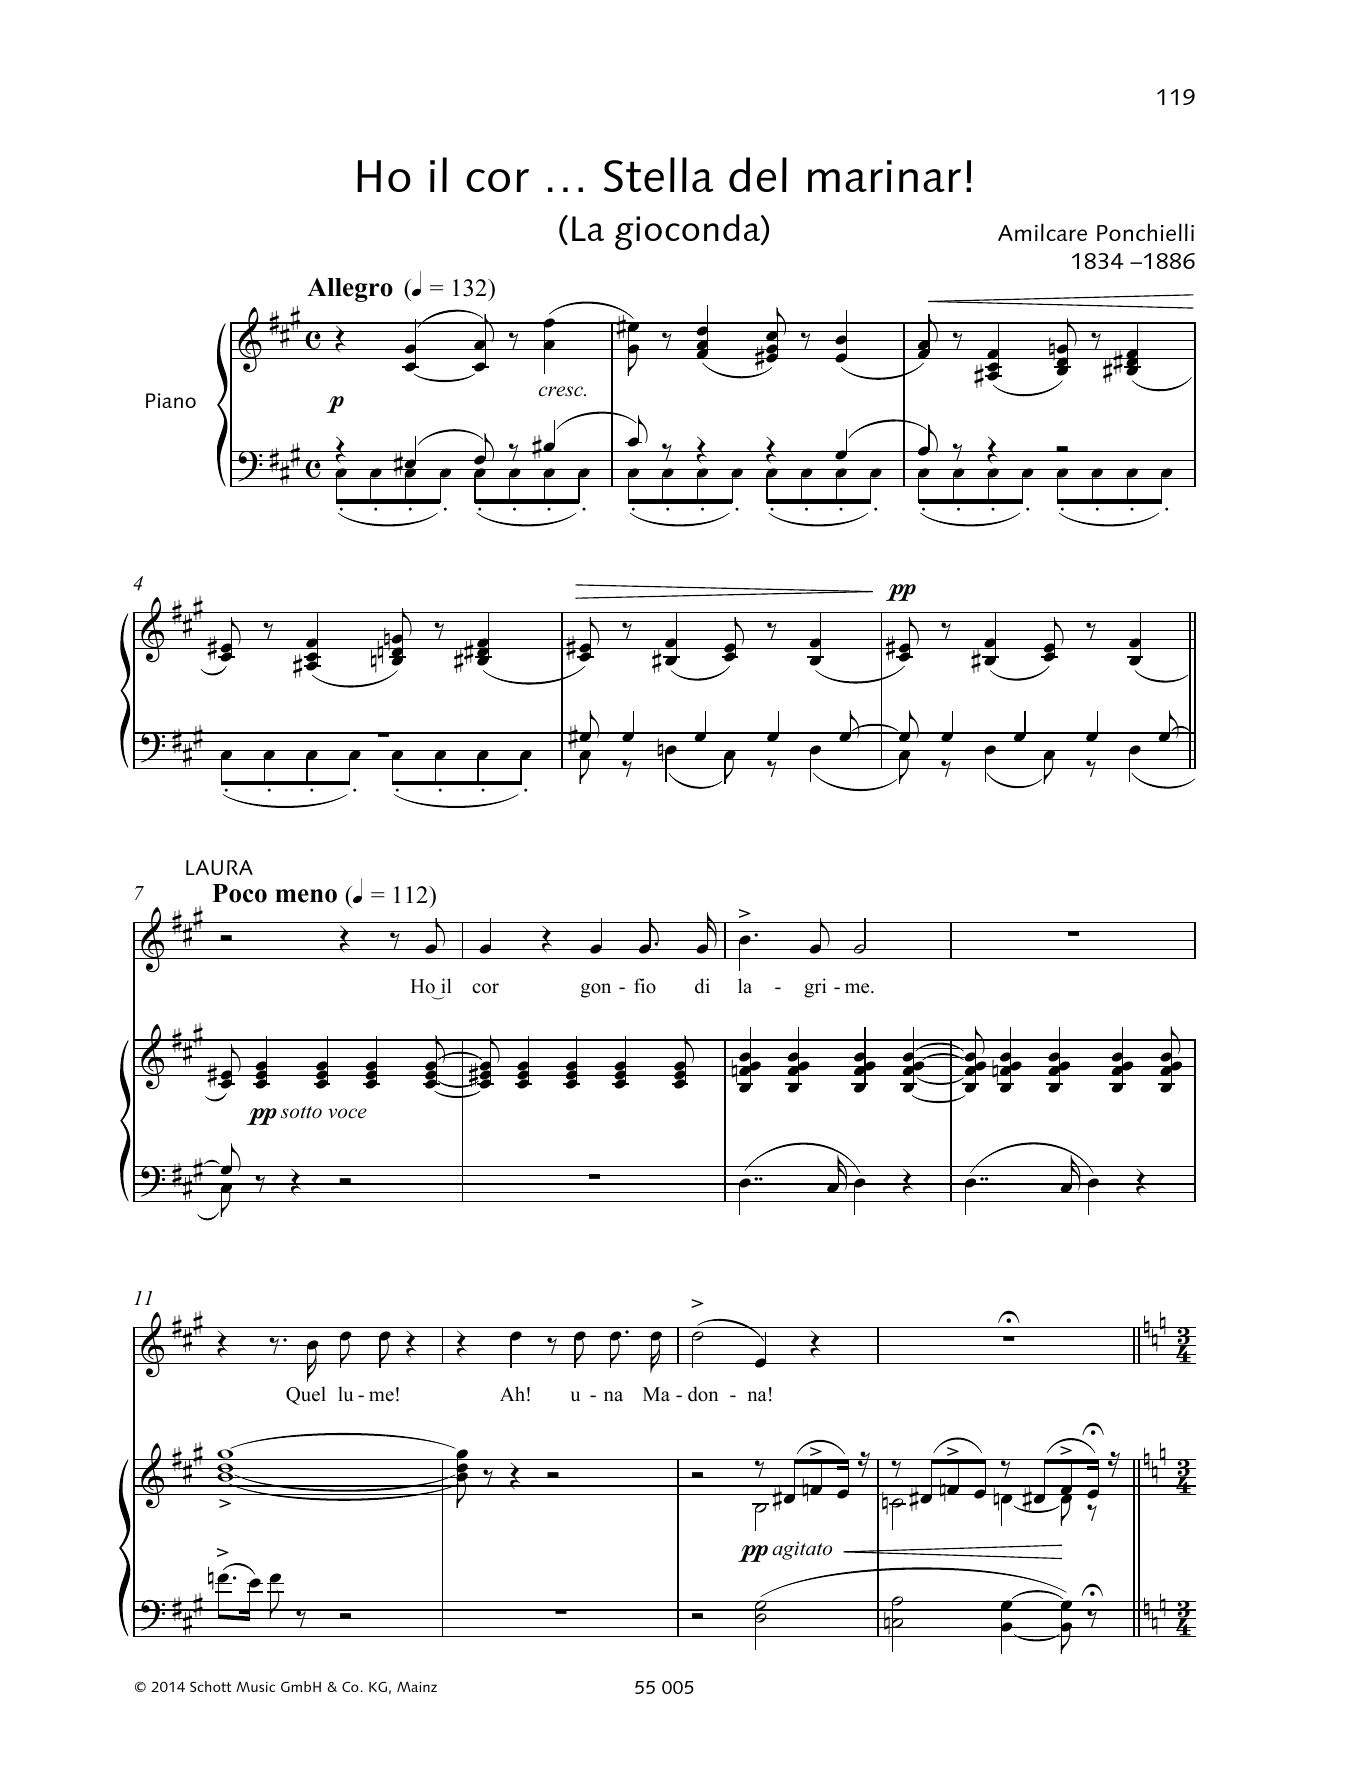 Francesca Licciarda Ho il cor... Stella del miranar! Sheet Music Notes & Chords for Piano & Vocal - Download or Print PDF